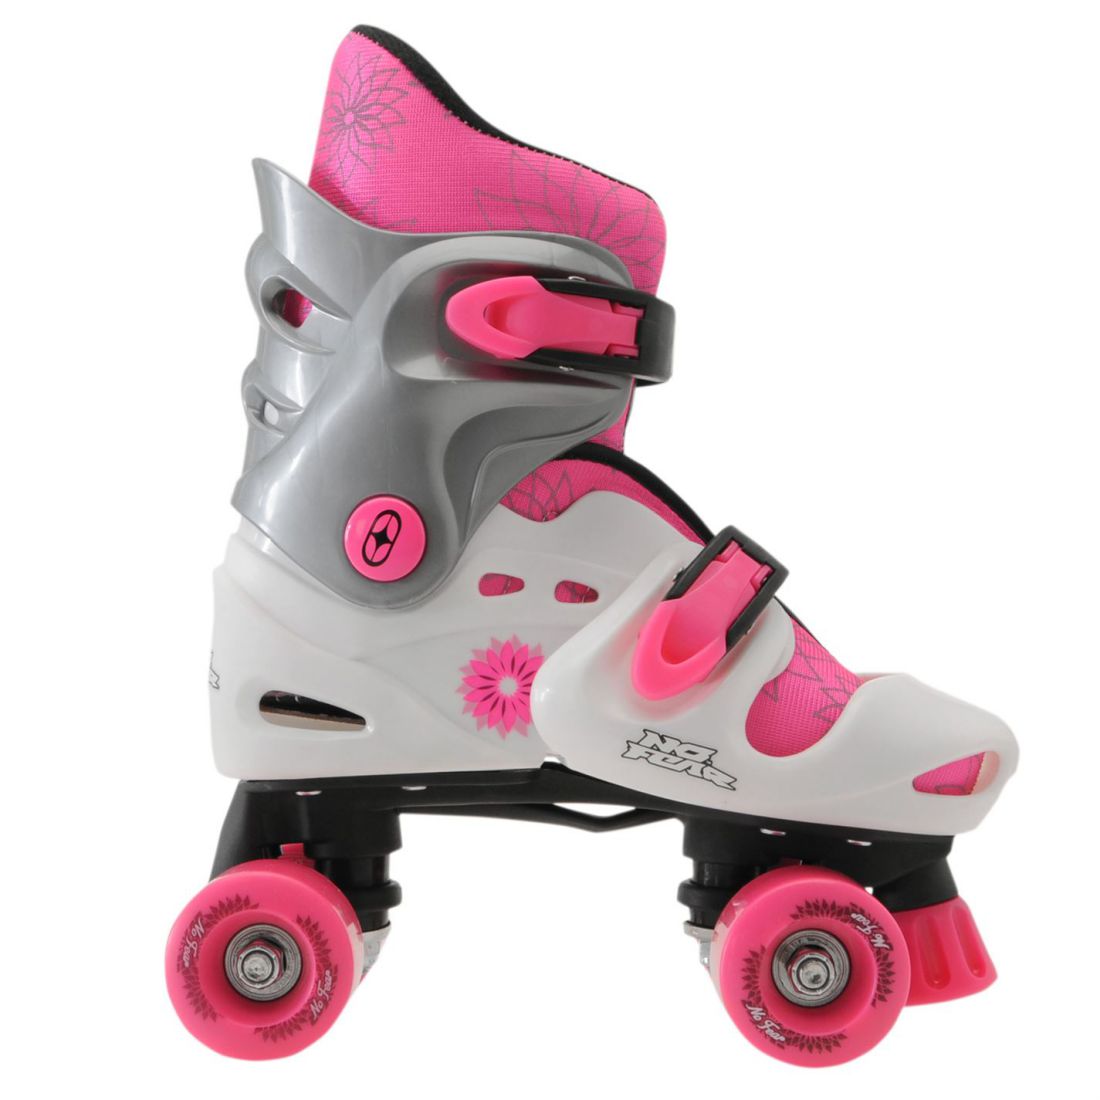 children's over shoe roller skates